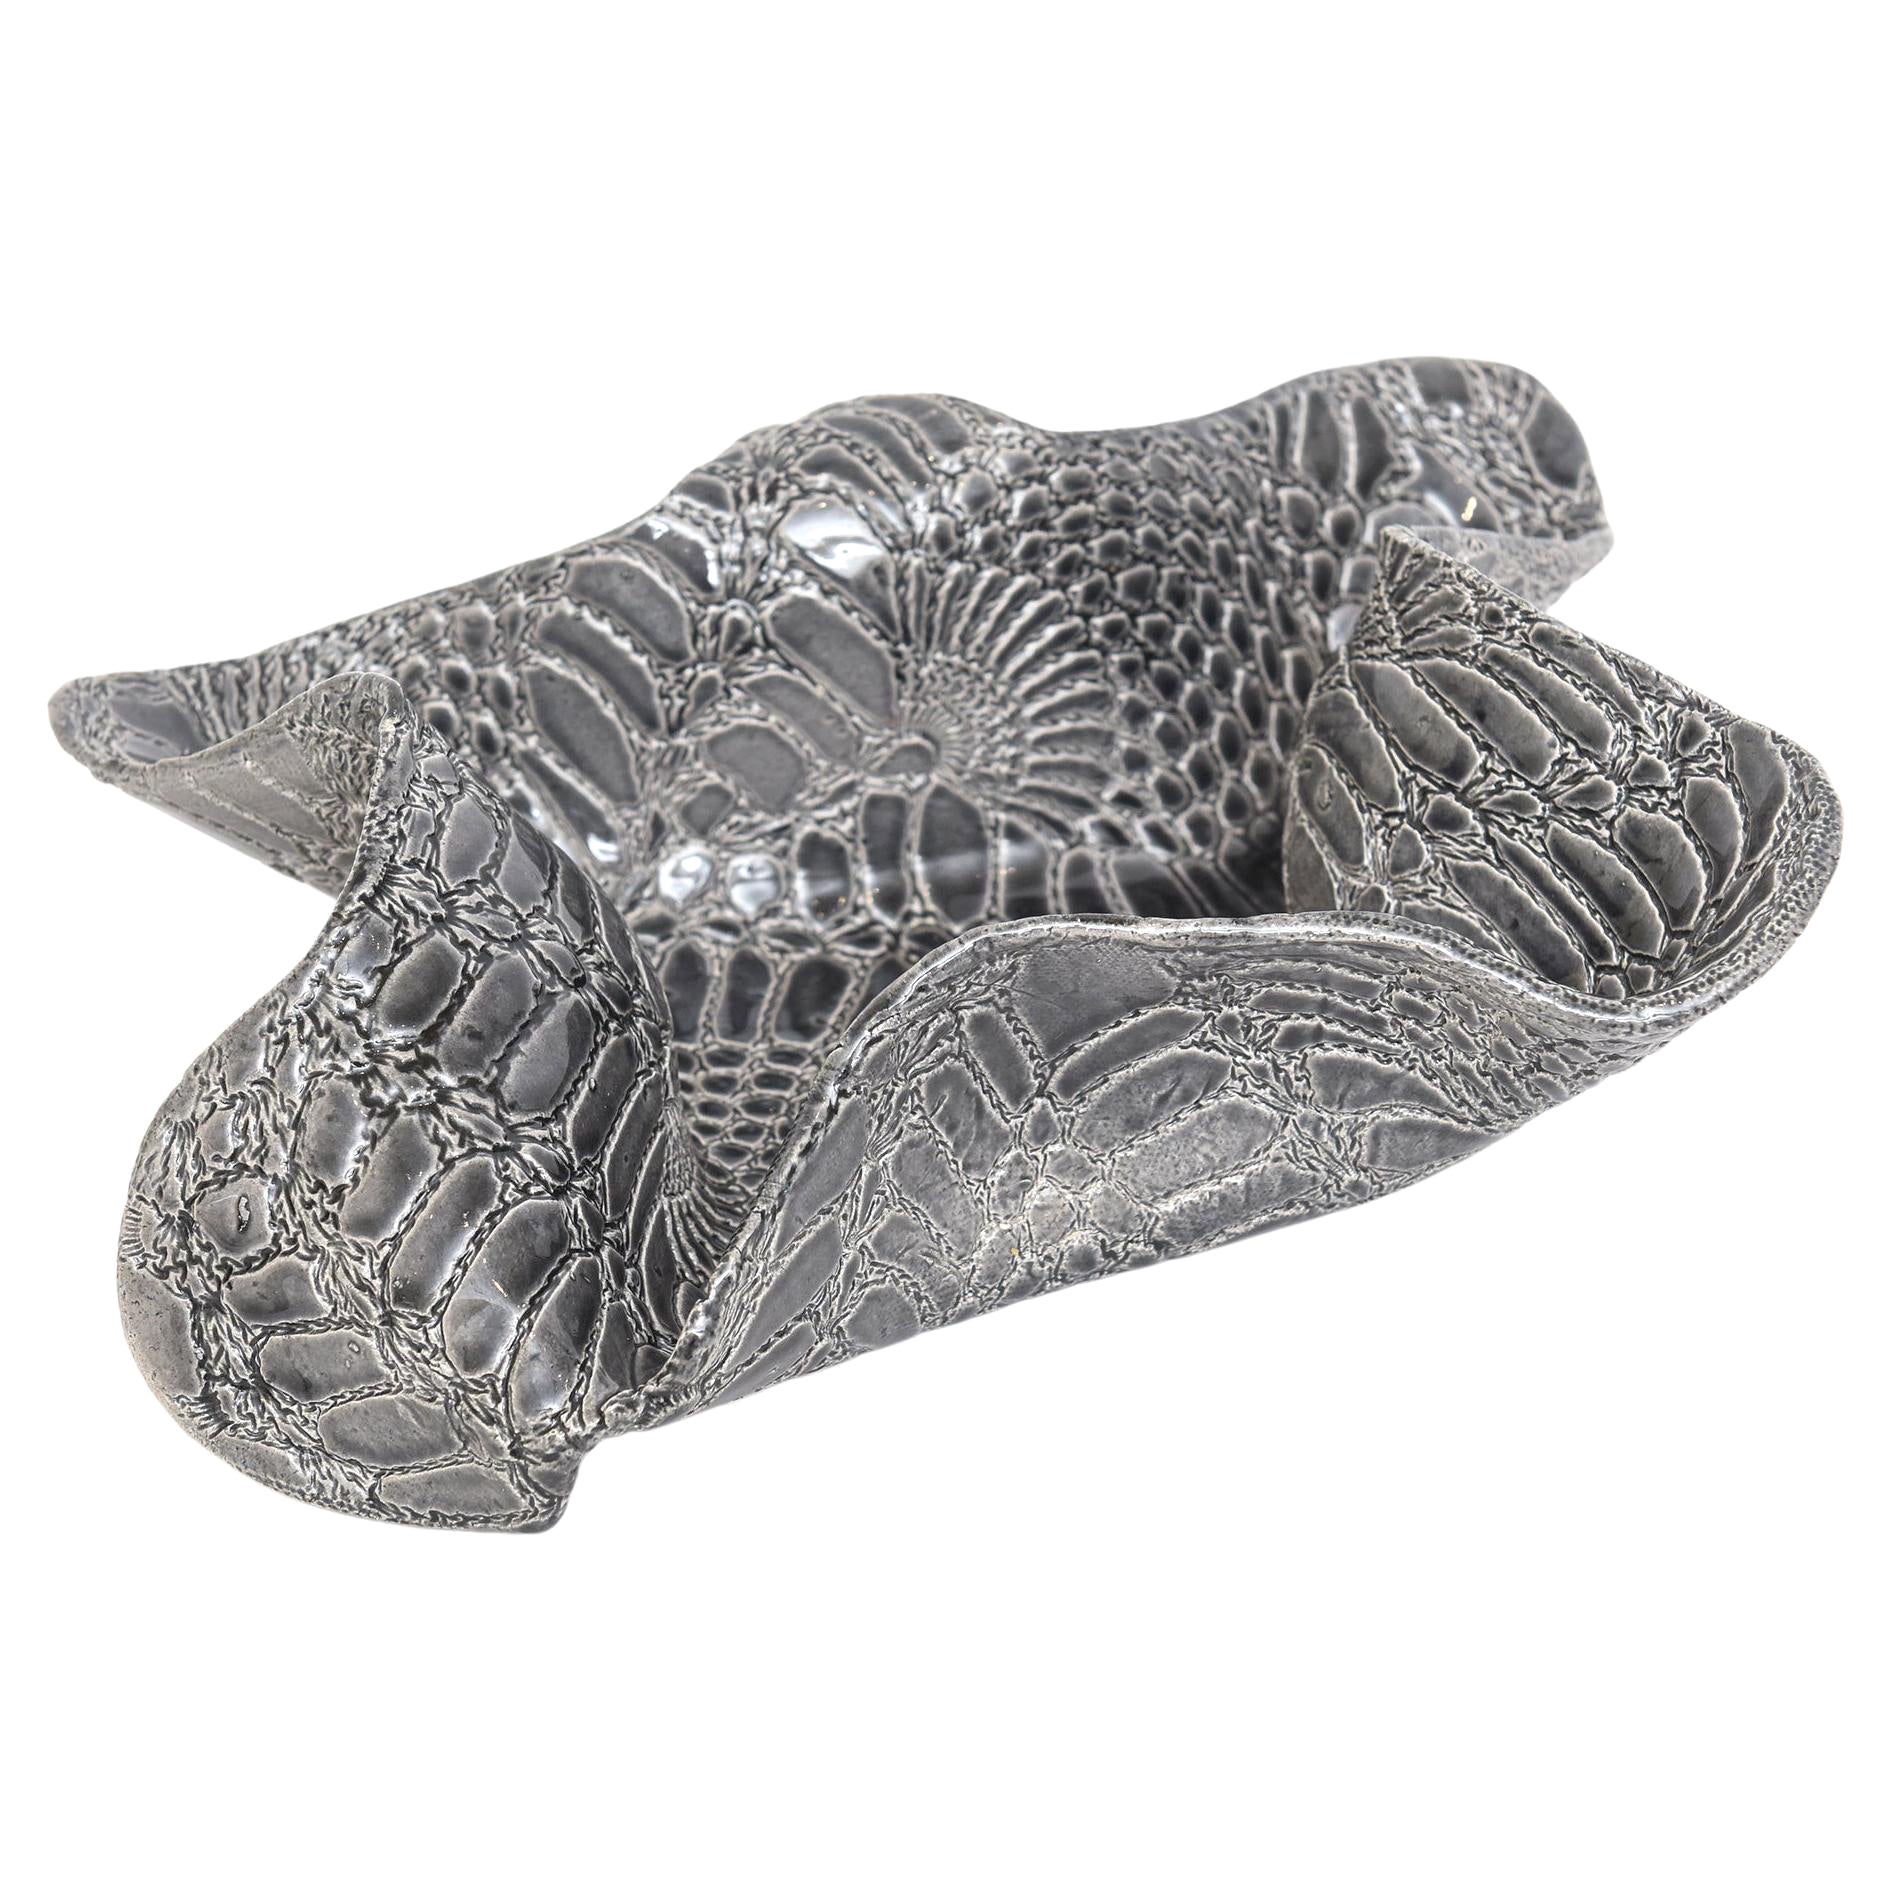 Keramik Texturierte Biomorphe skulpturale Schale mit Schlangenhautmuster Grau Weiß im Angebot